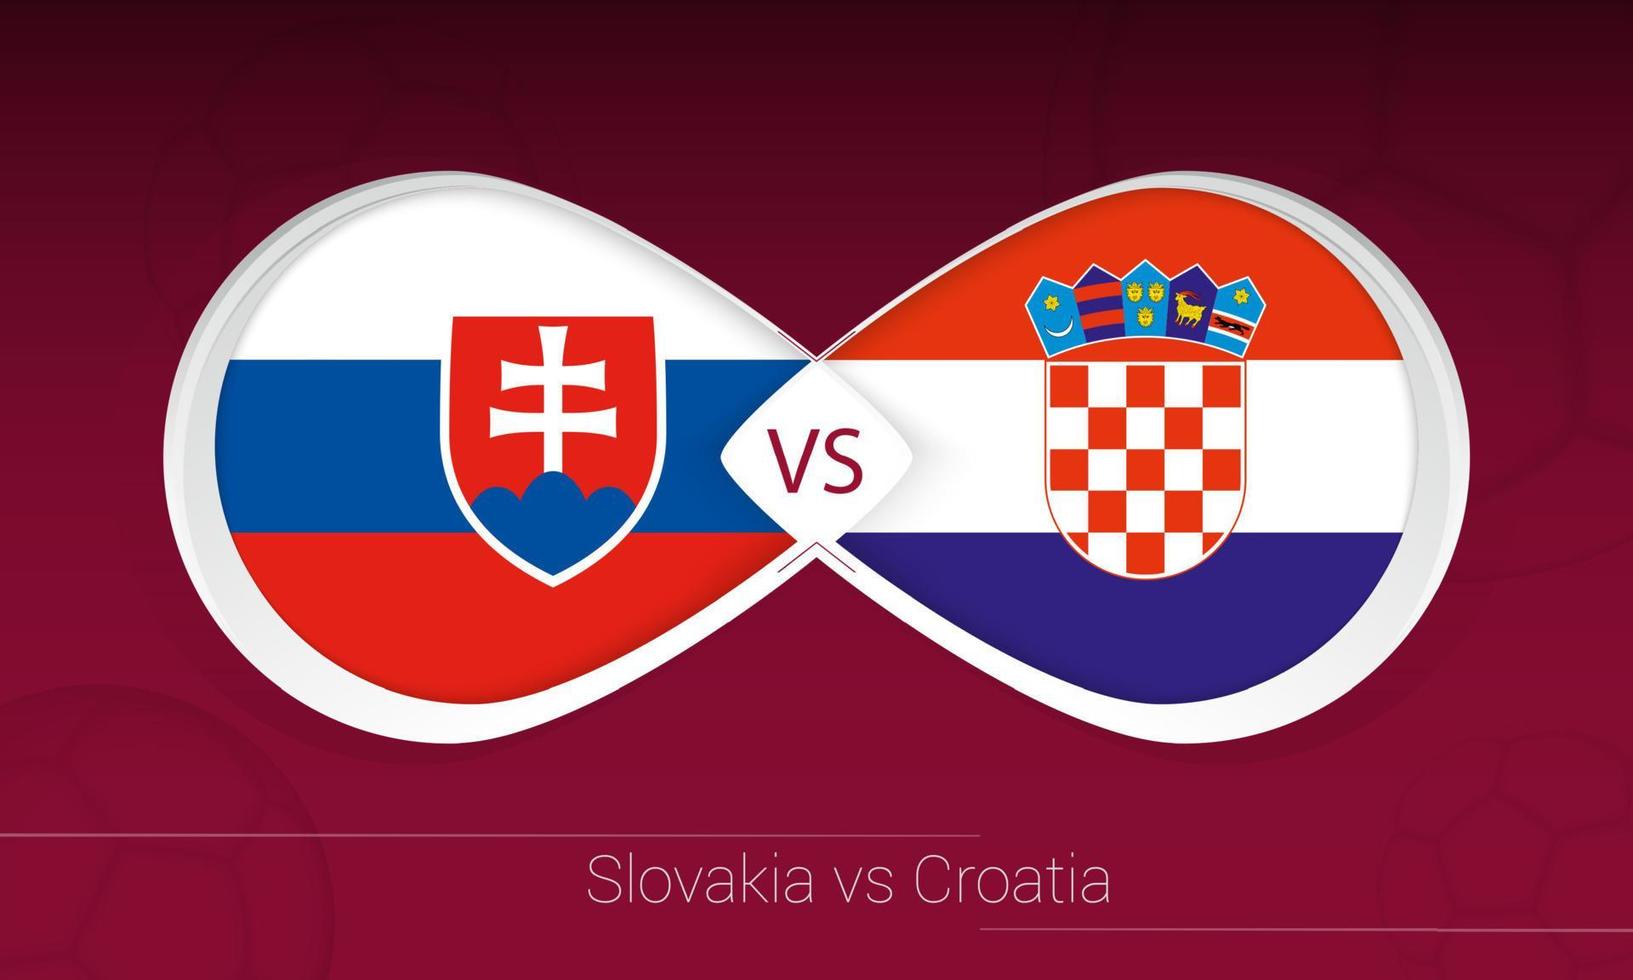 eslovaquia vs croacia en competición de fútbol, grupo h. versus icono en el fondo del fútbol. vector